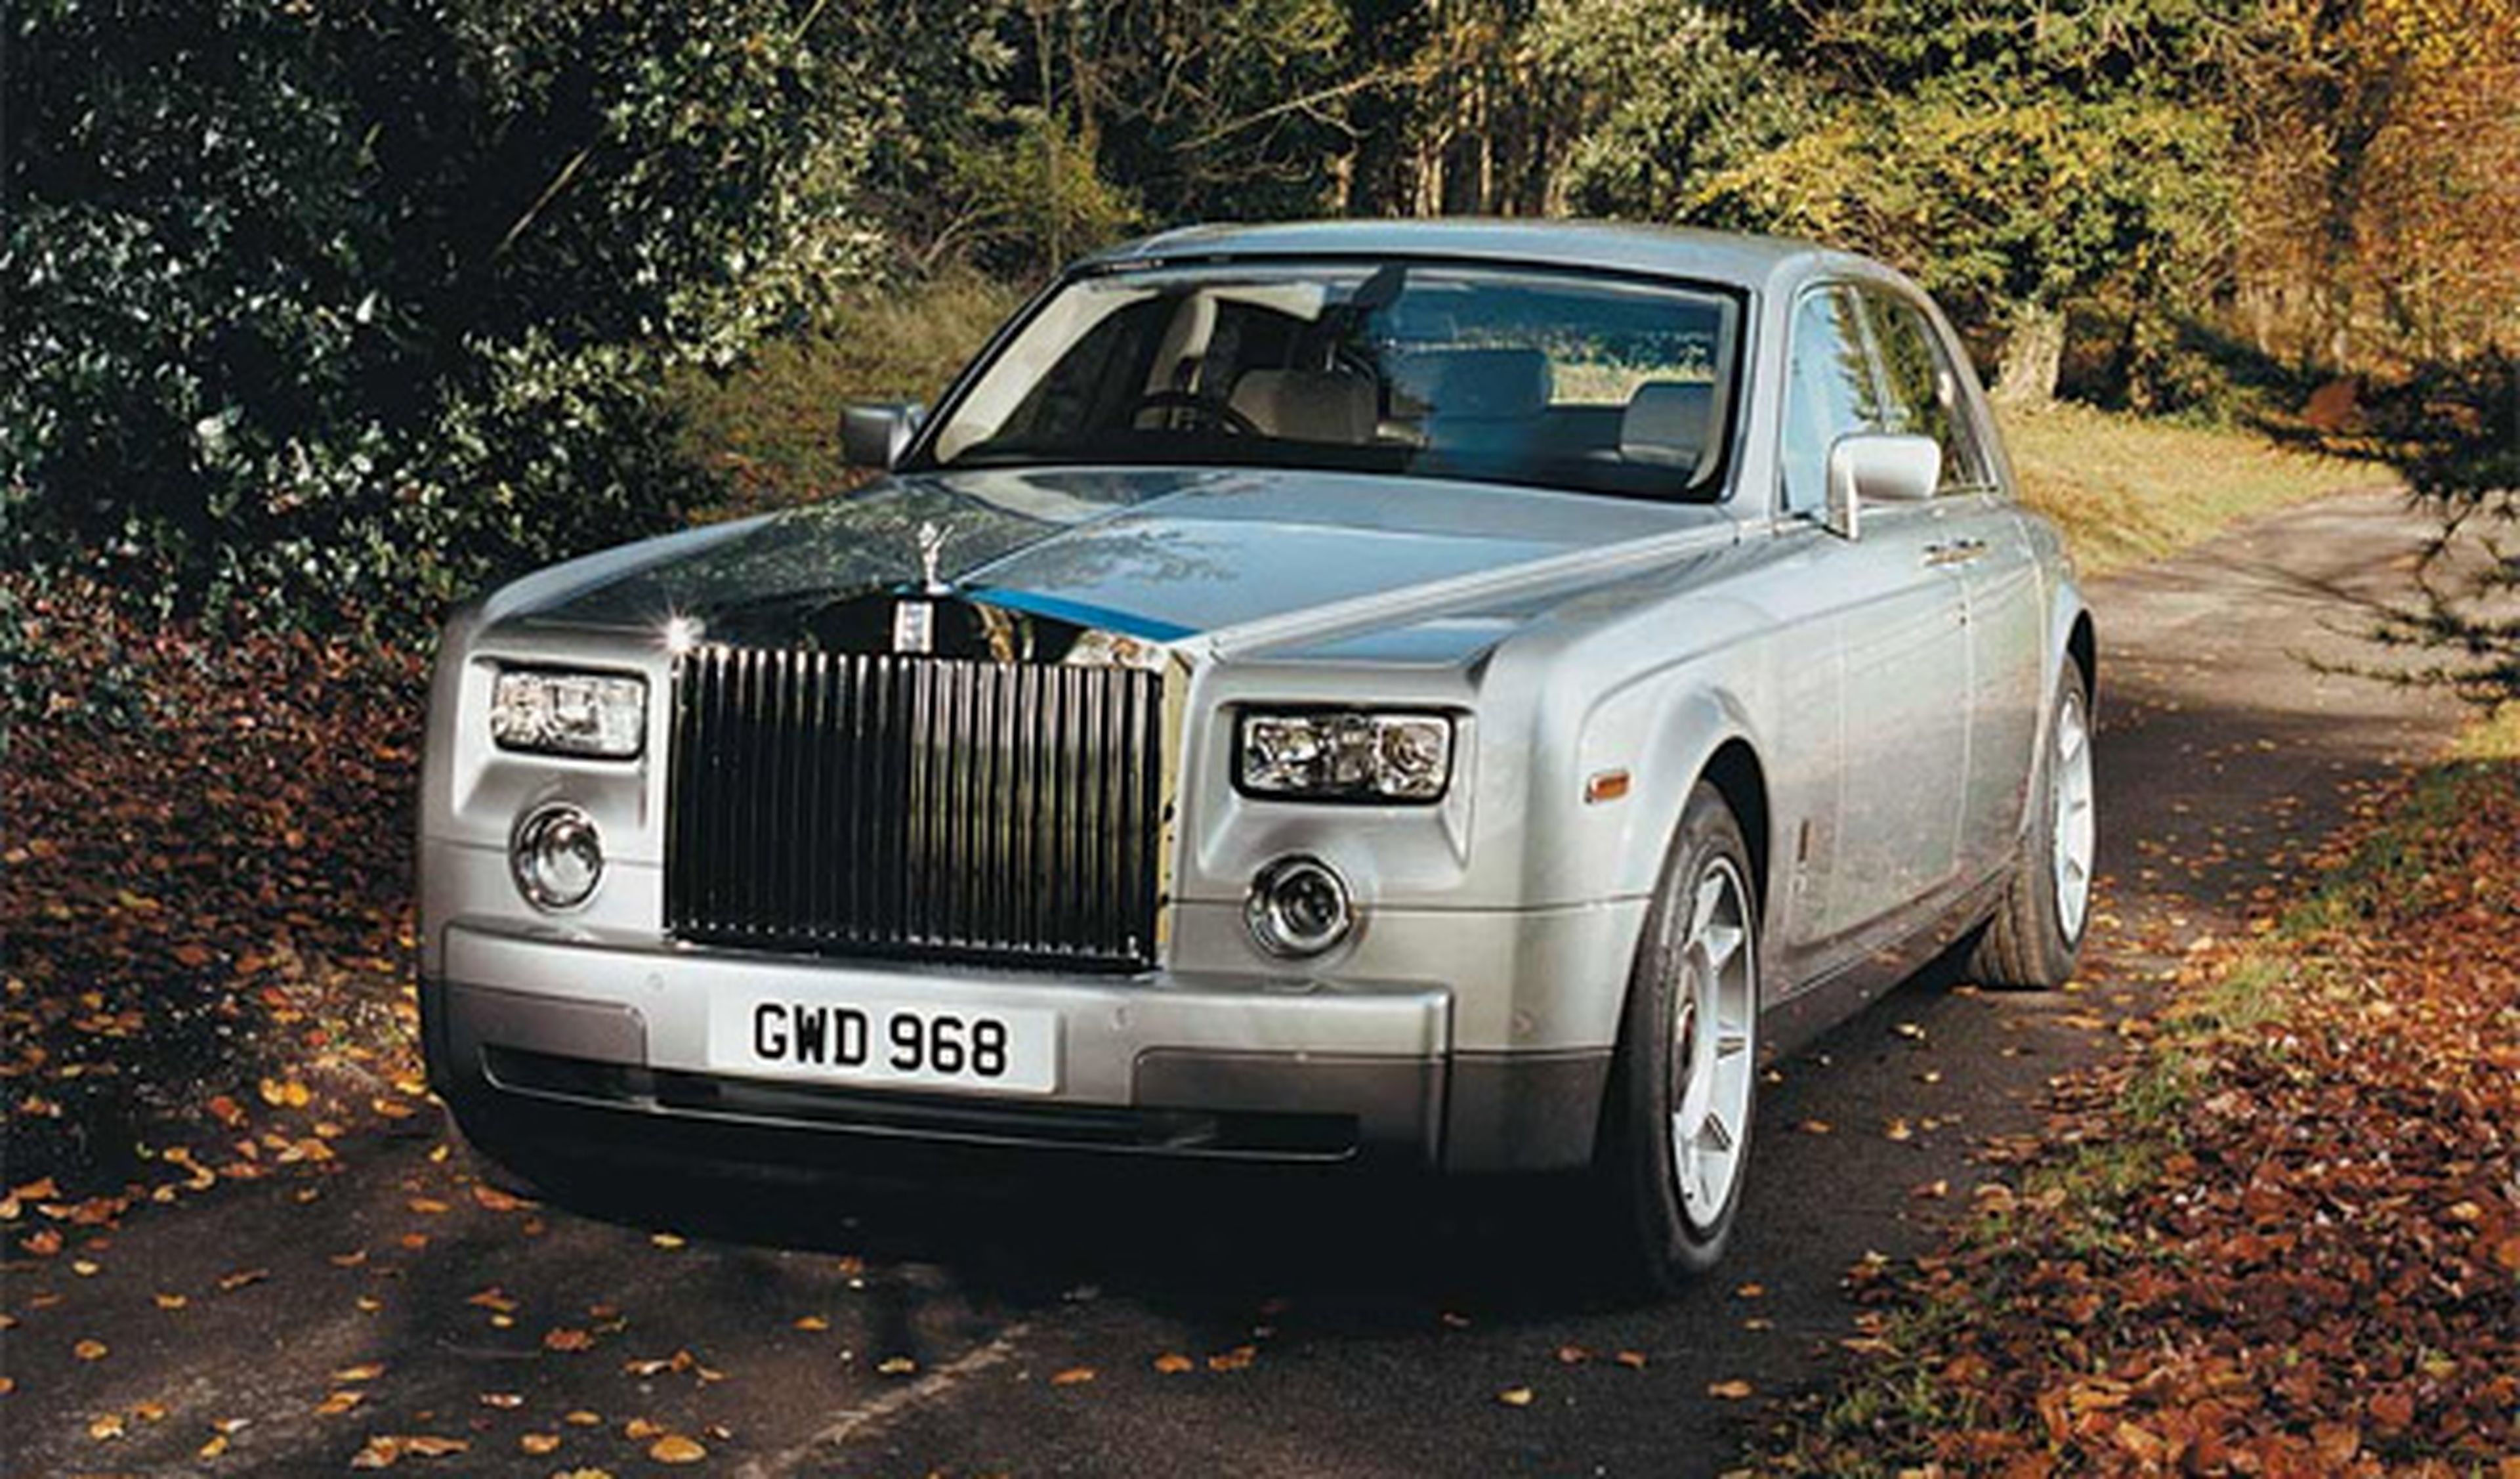 La Baronesa Thyssen vende 'La esclusa' (The lock) y no su Rolls-Royce